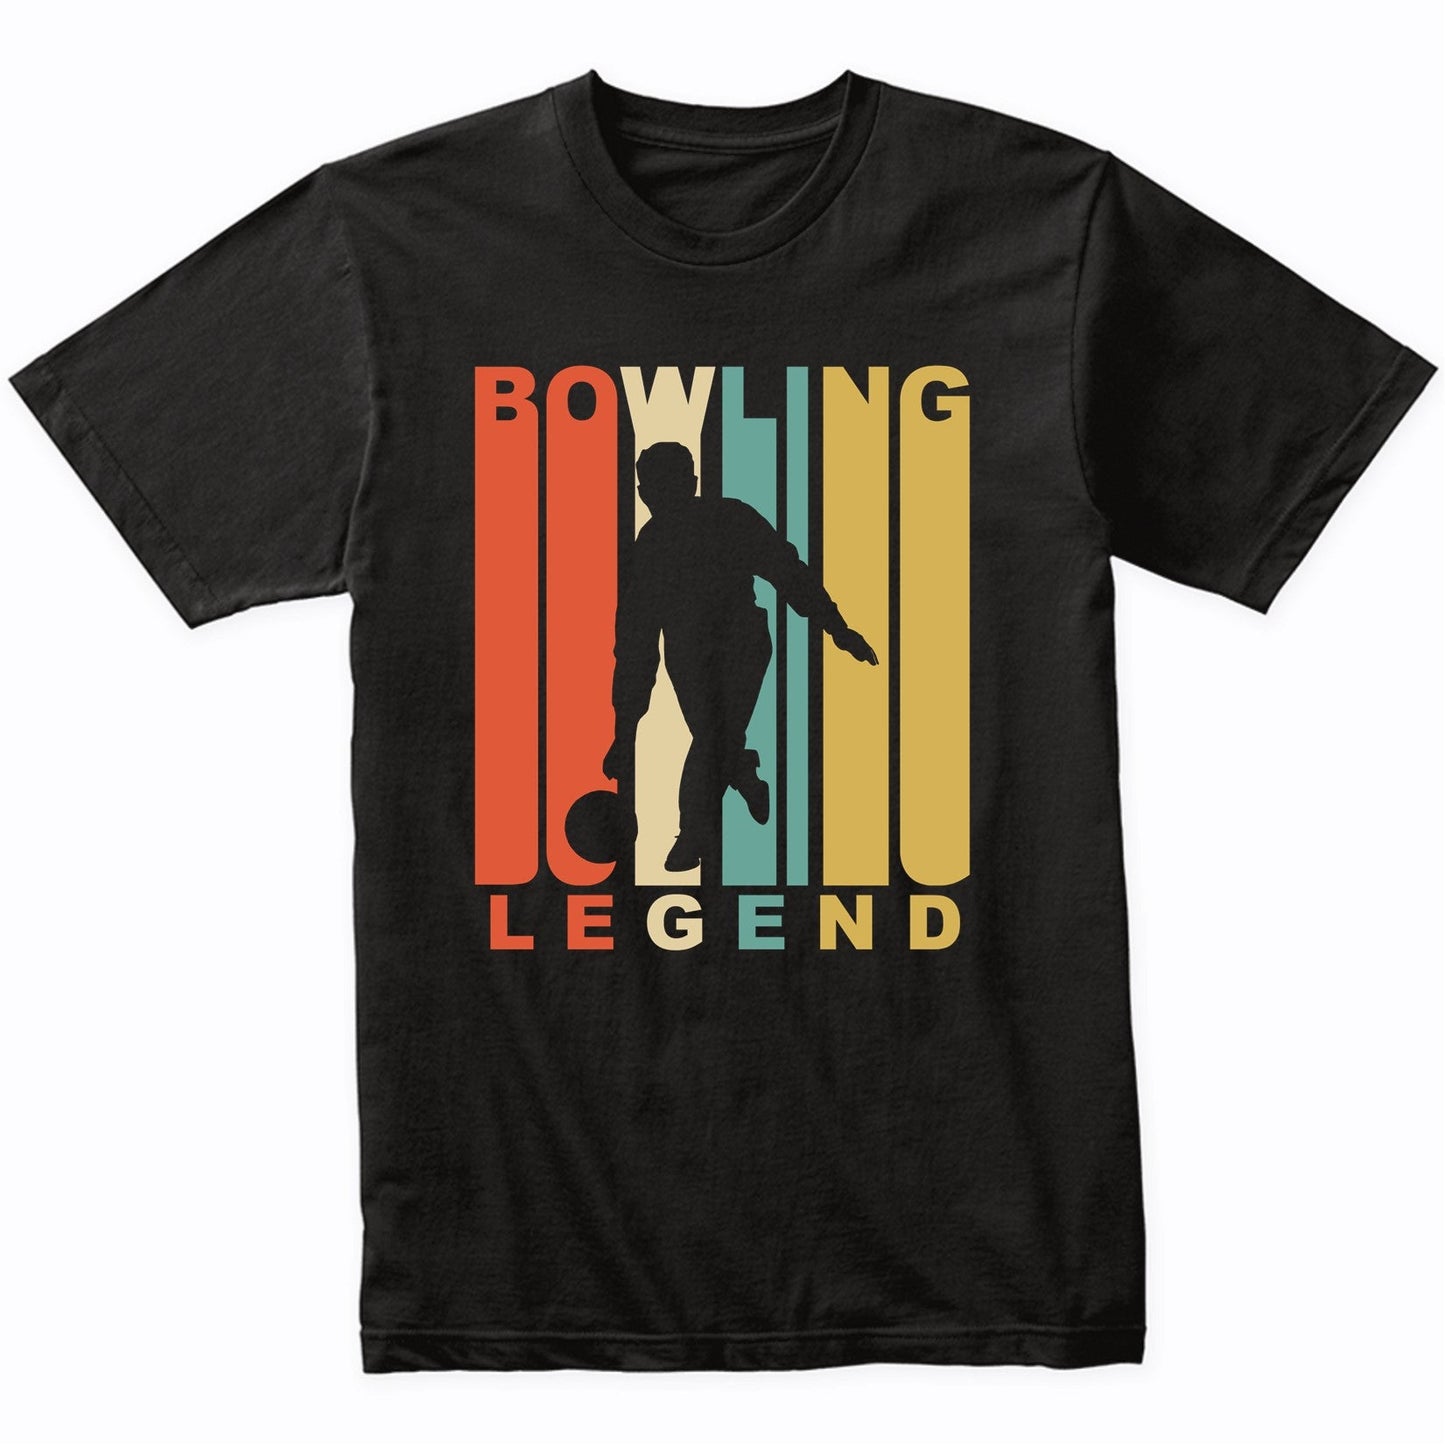 Vintage 1970's Style Bowling Legend Retro Bowler T-Shirt